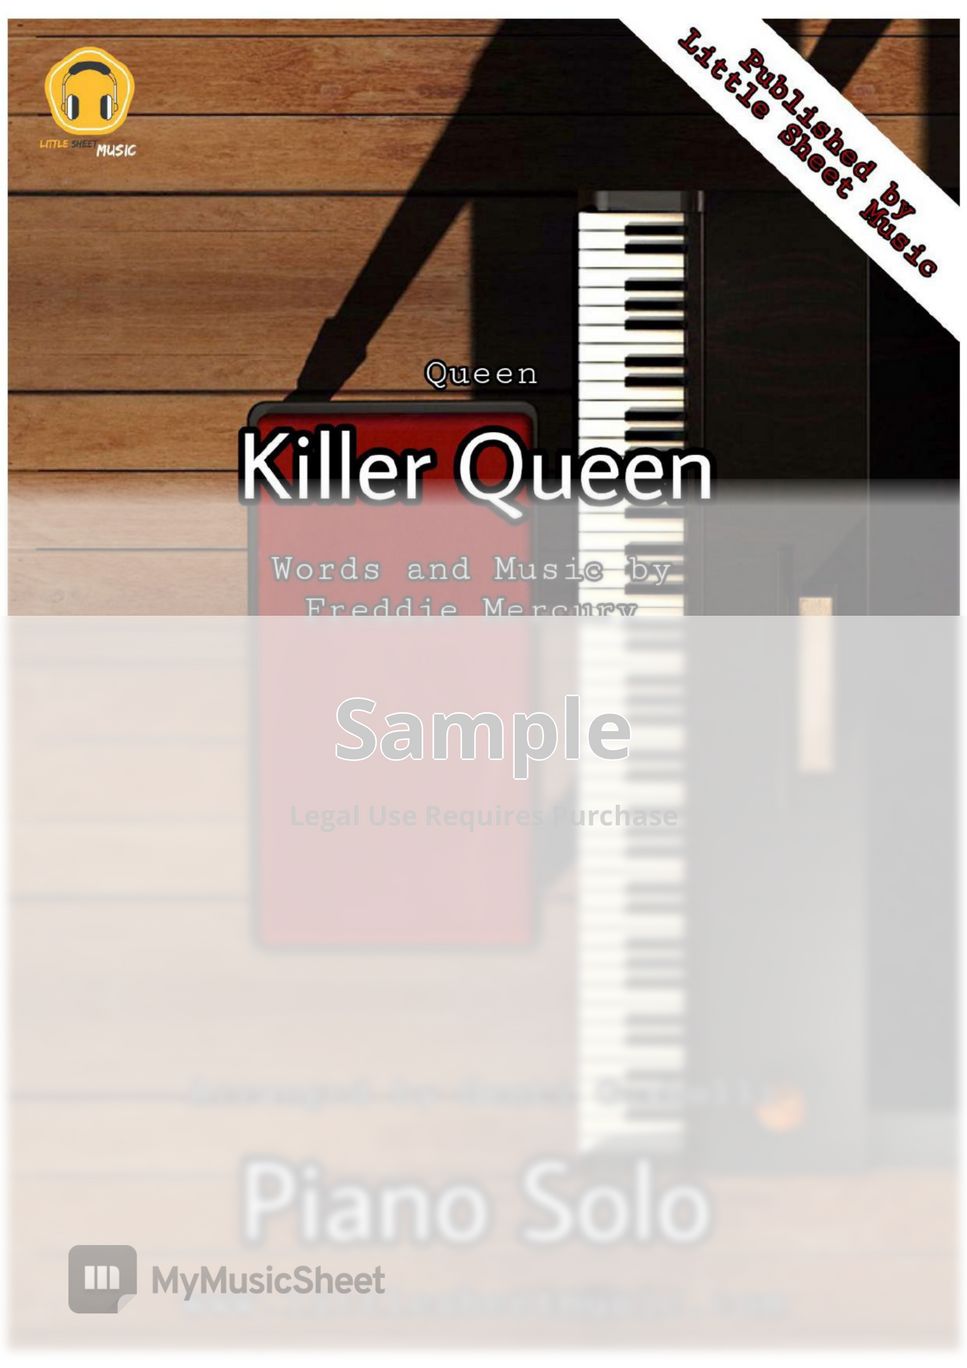 Queen - Killer Queen by Genti Guxholli